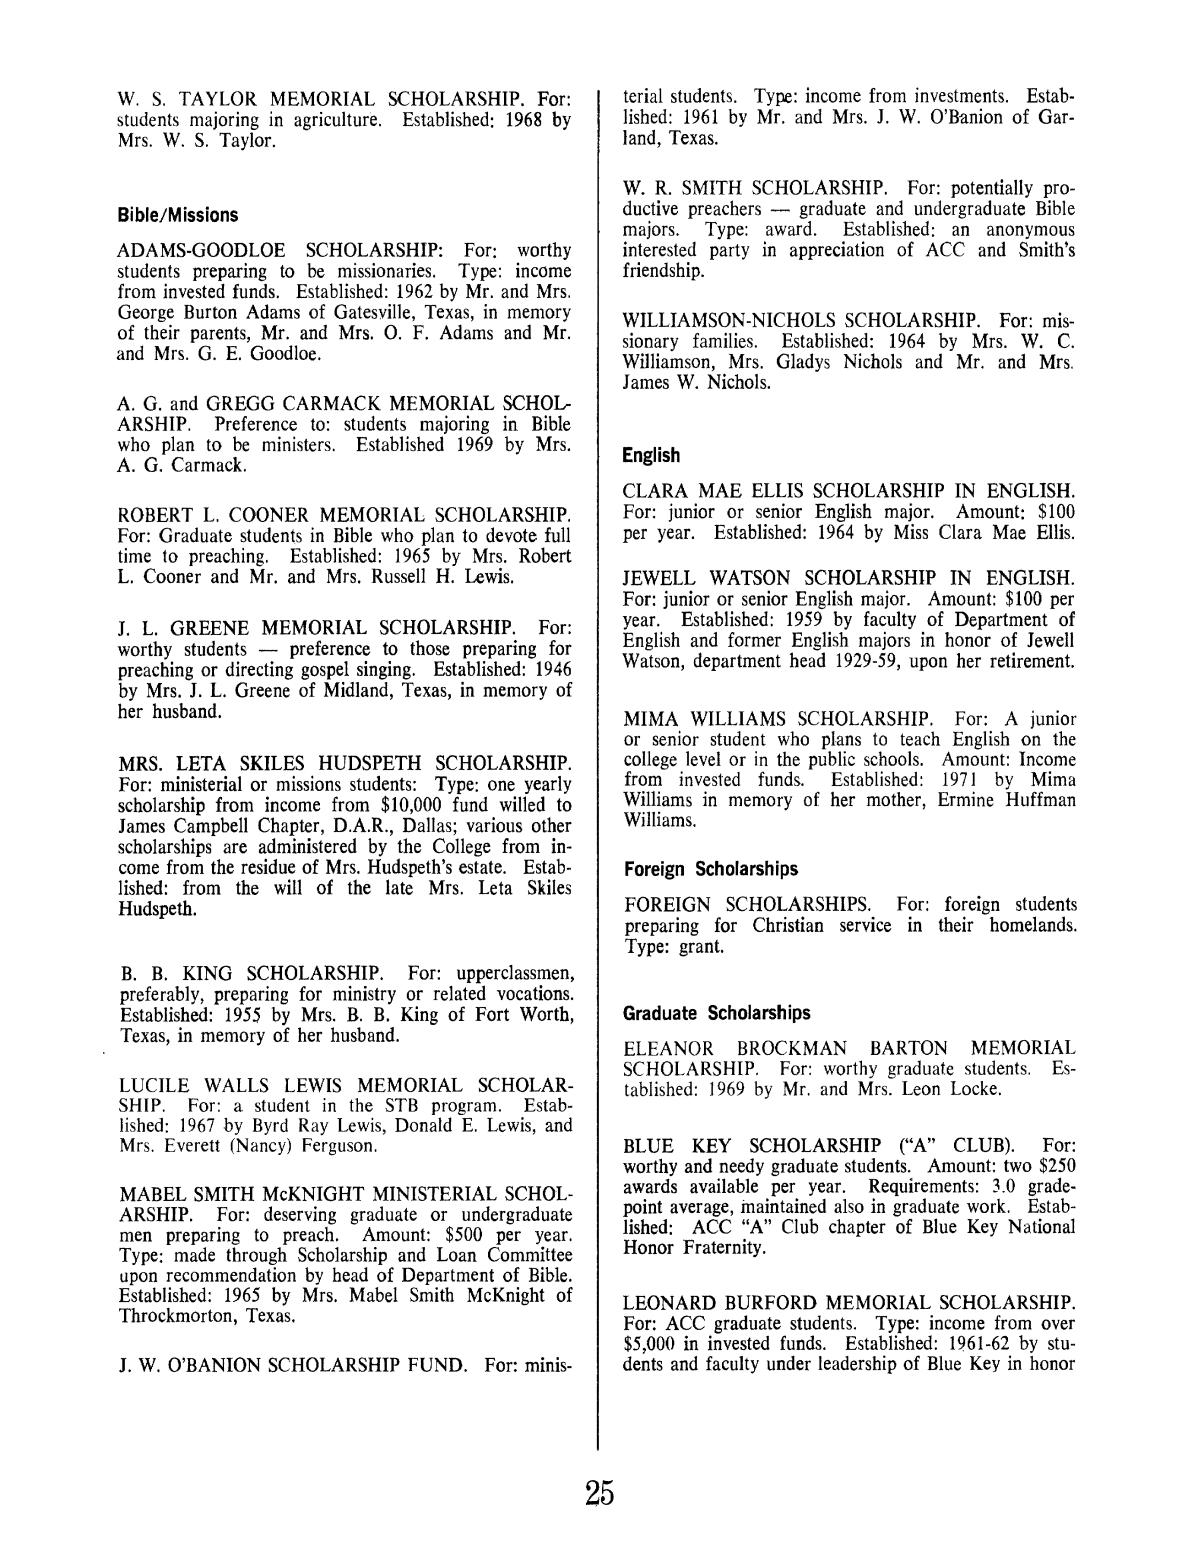 Catalog of Abilene Christian College, 1972-1973
                                                
                                                    25
                                                